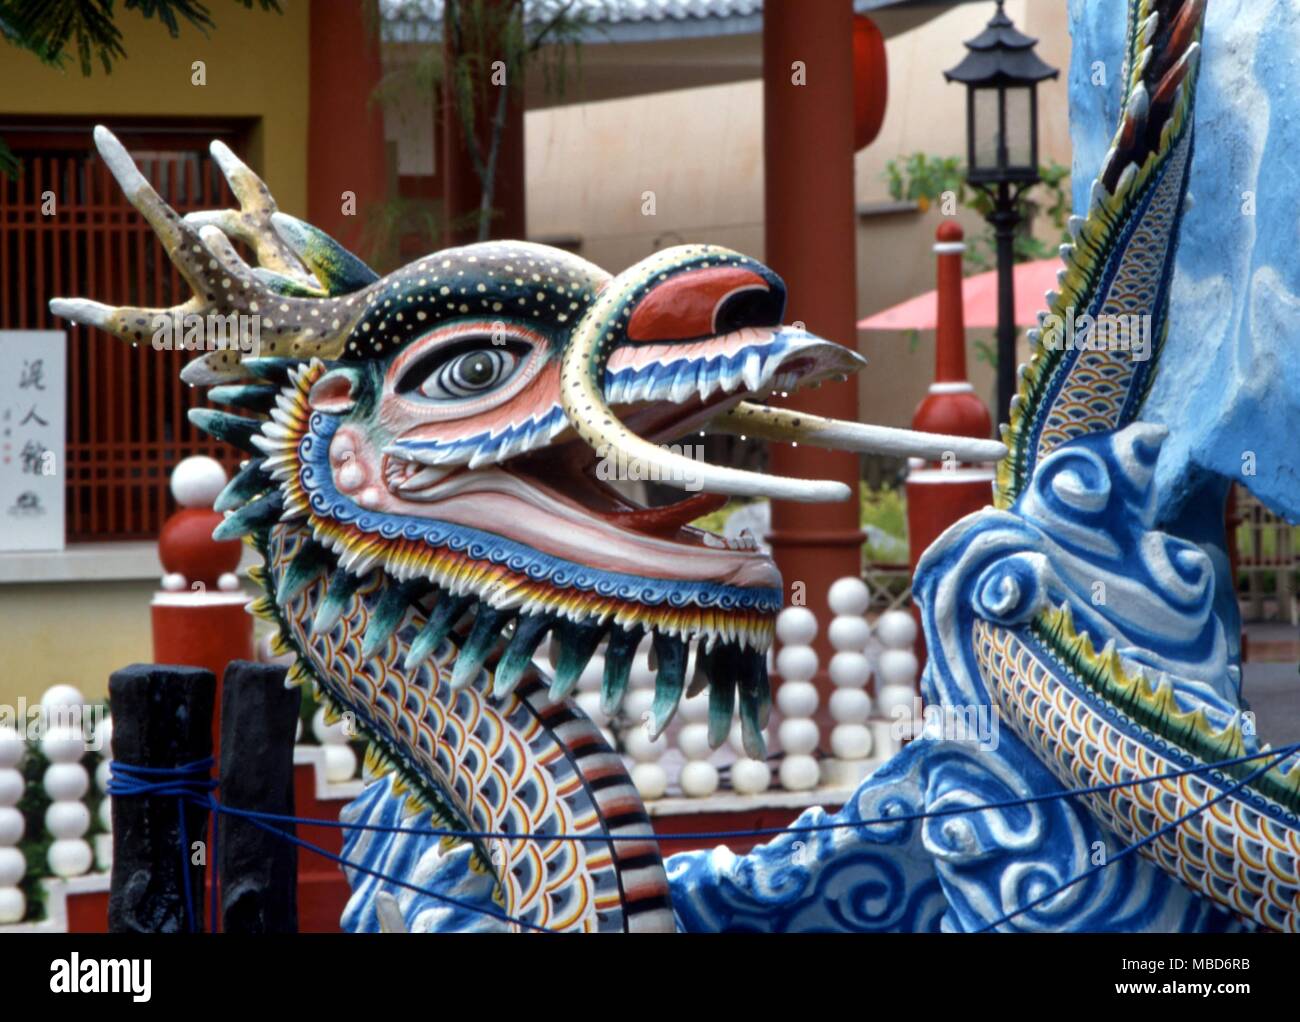 DRAGON-In dreidimensionale Form von den Gärten der Haw Par Villa in Singapur Stockfoto